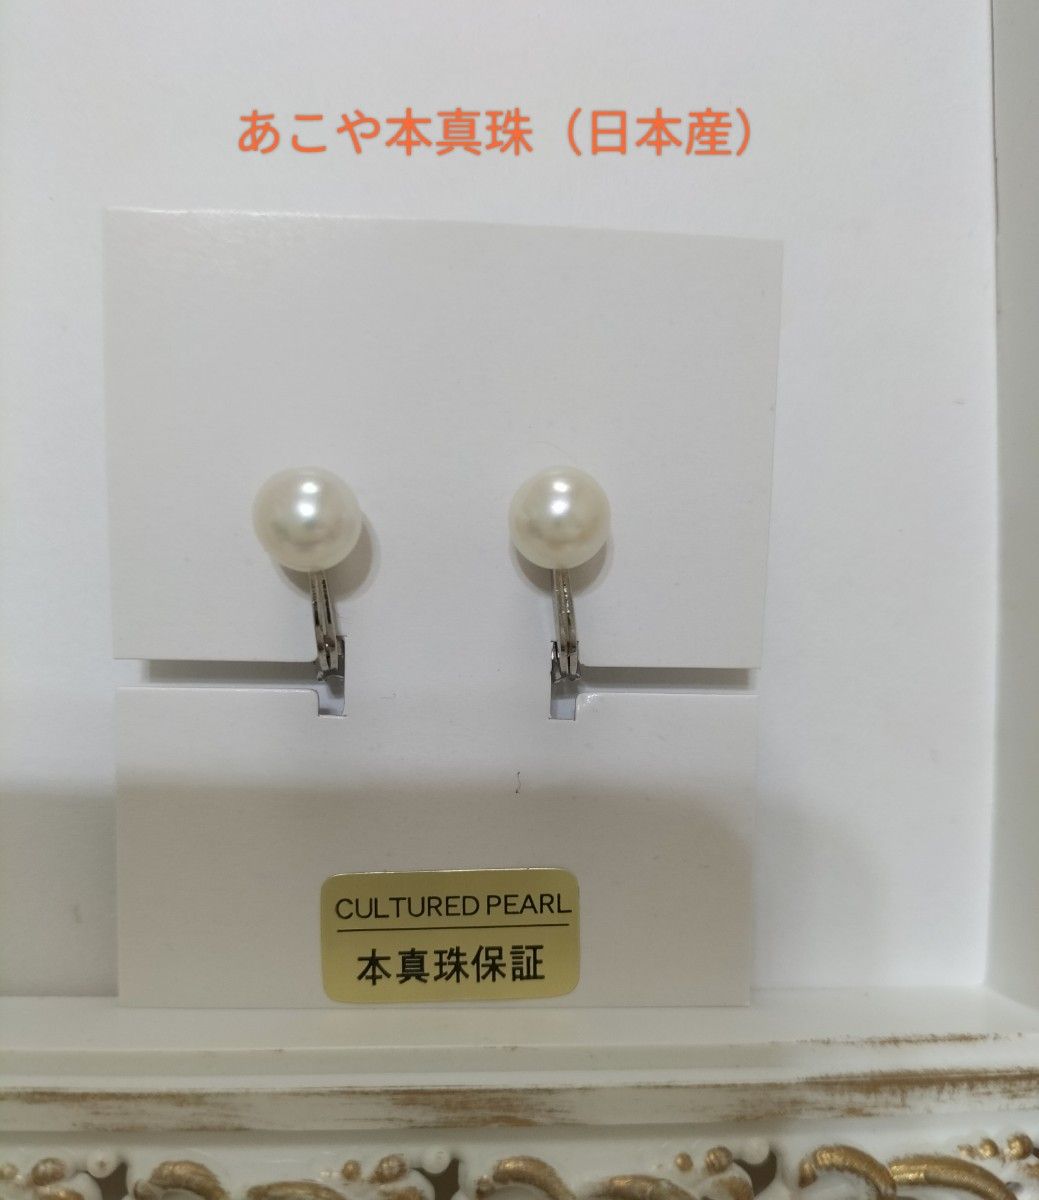 あこや本真珠（日本産）の調整可能なクリップ式イヤリング（日本製）